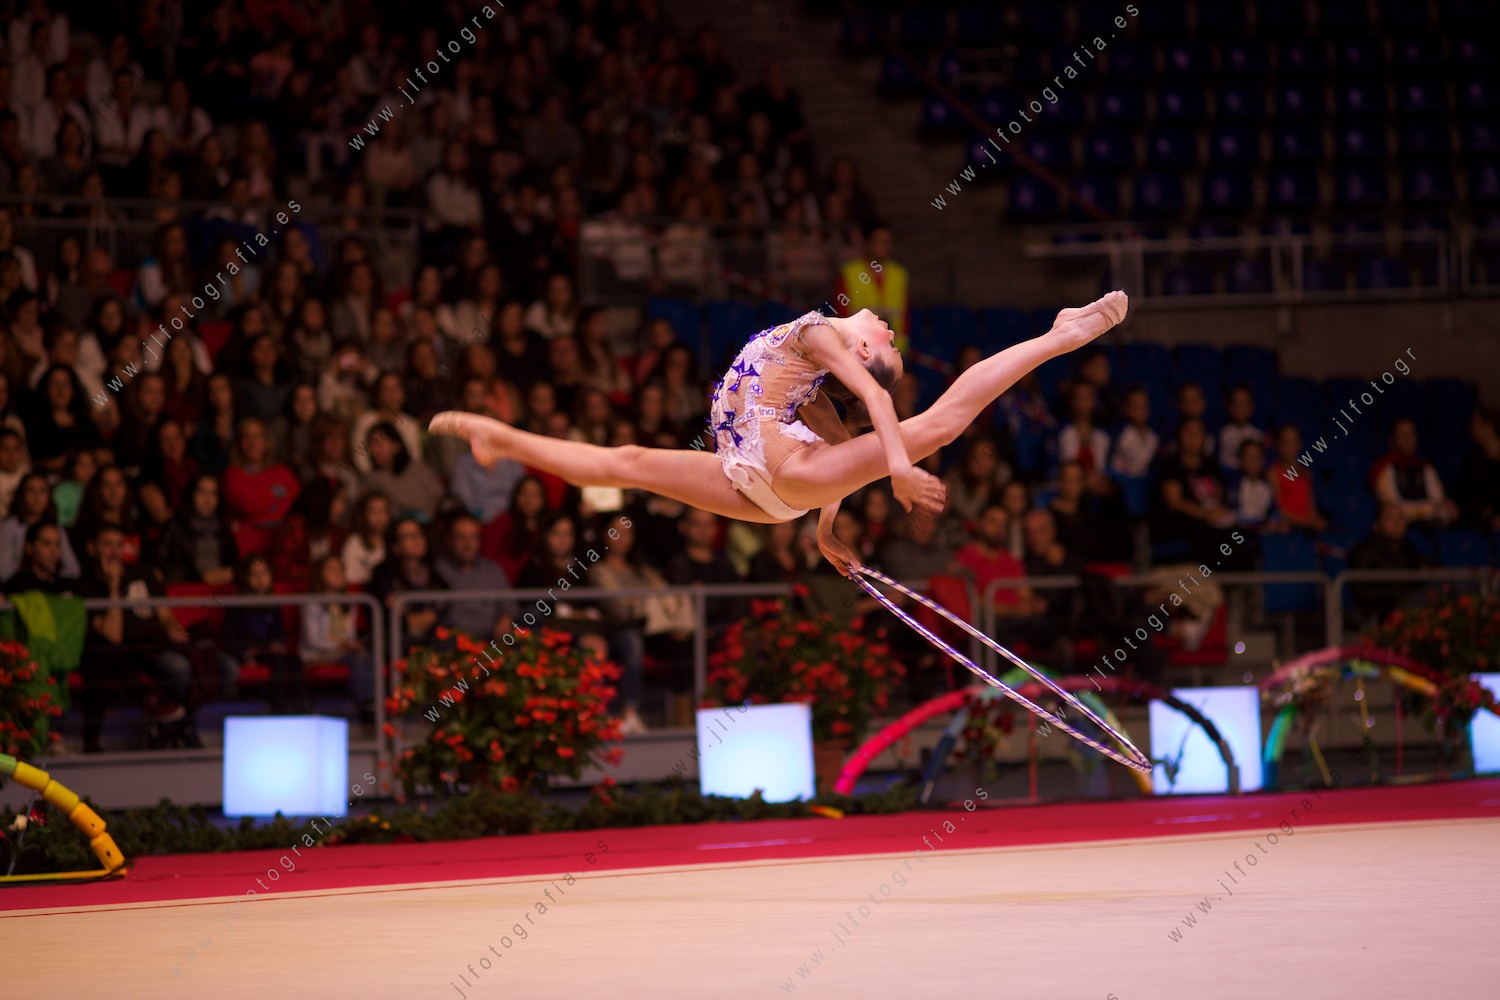 Euskalgym 11 de 2016 en el Fernando Buesa Arena, gimnasta en salto impresionante con el aro.